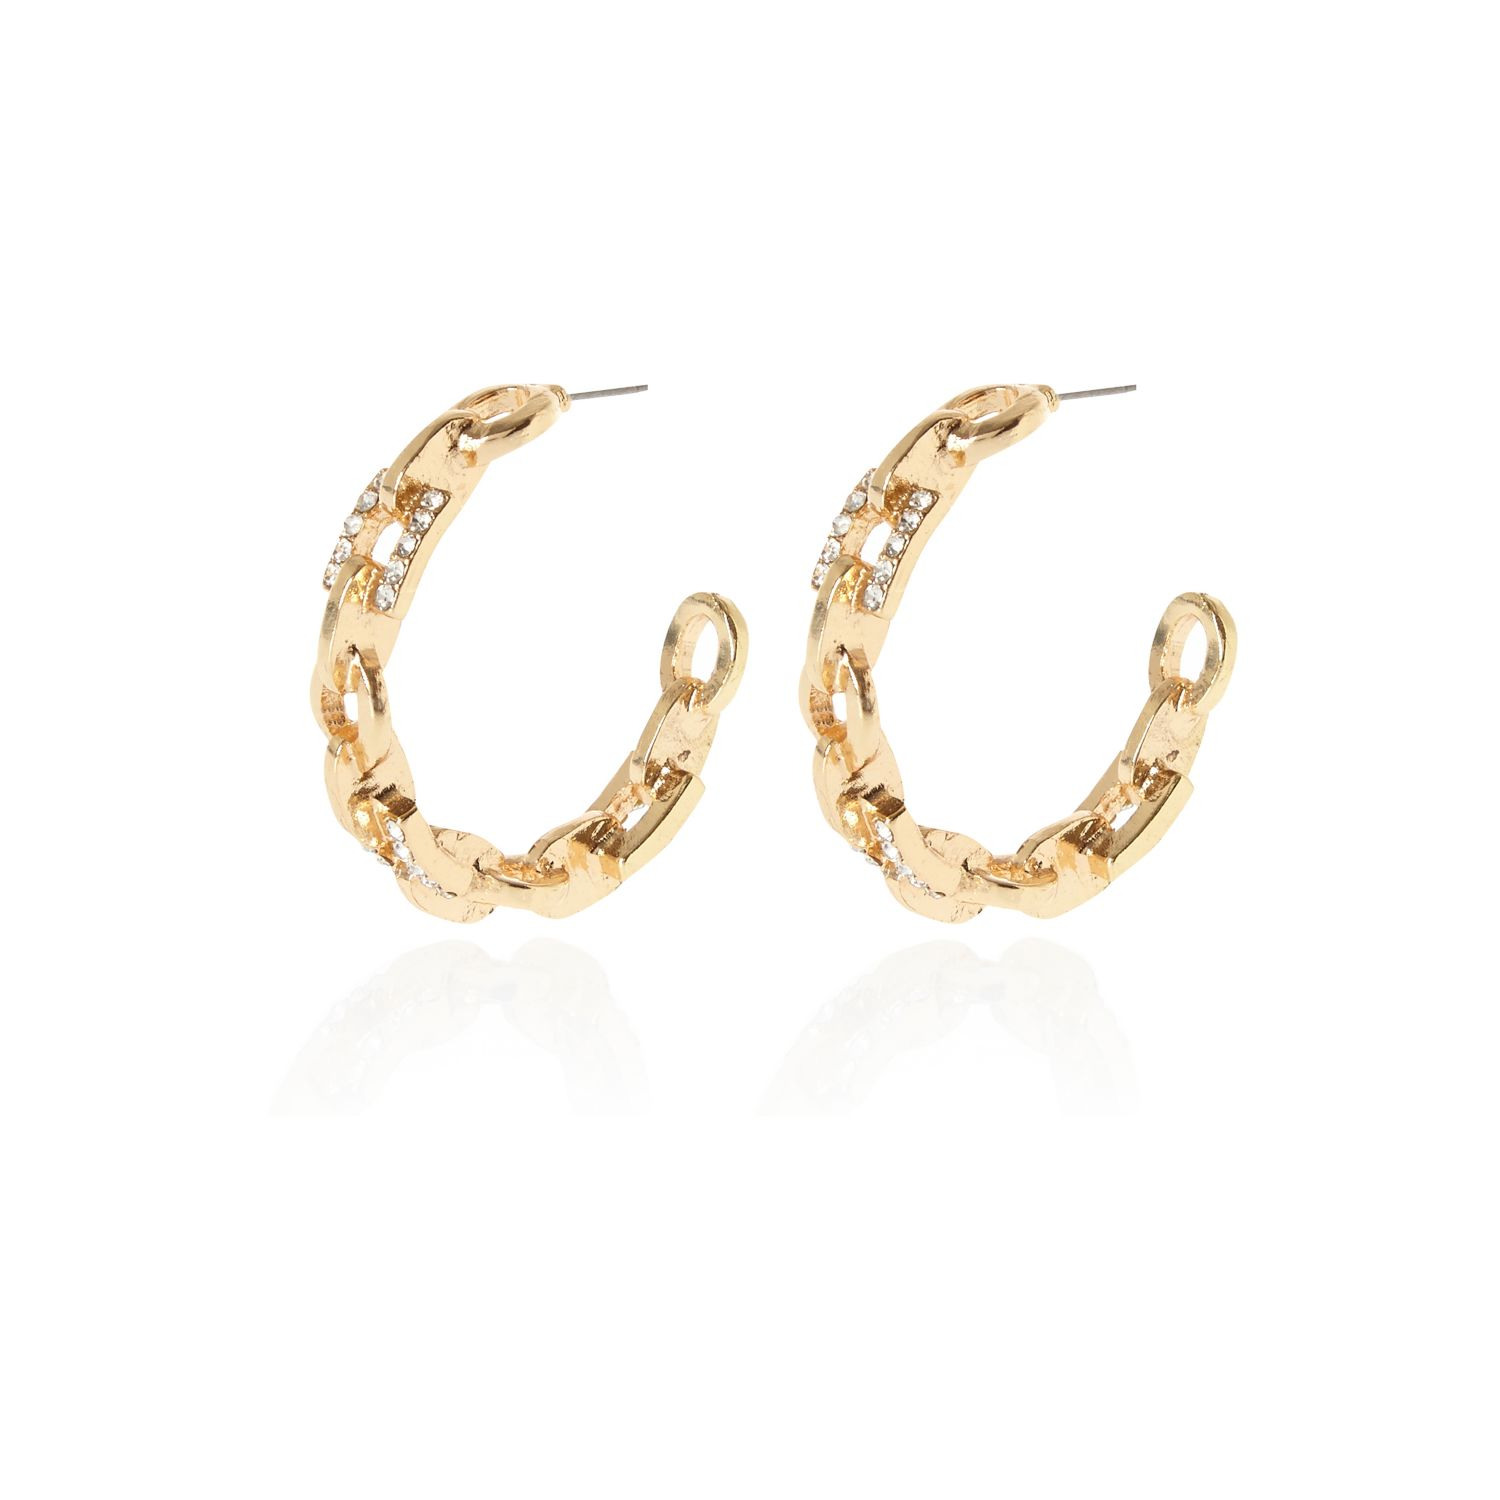 River Island Gold Tone Rhinestone Chain Hoop Earrings in Gold | Lyst